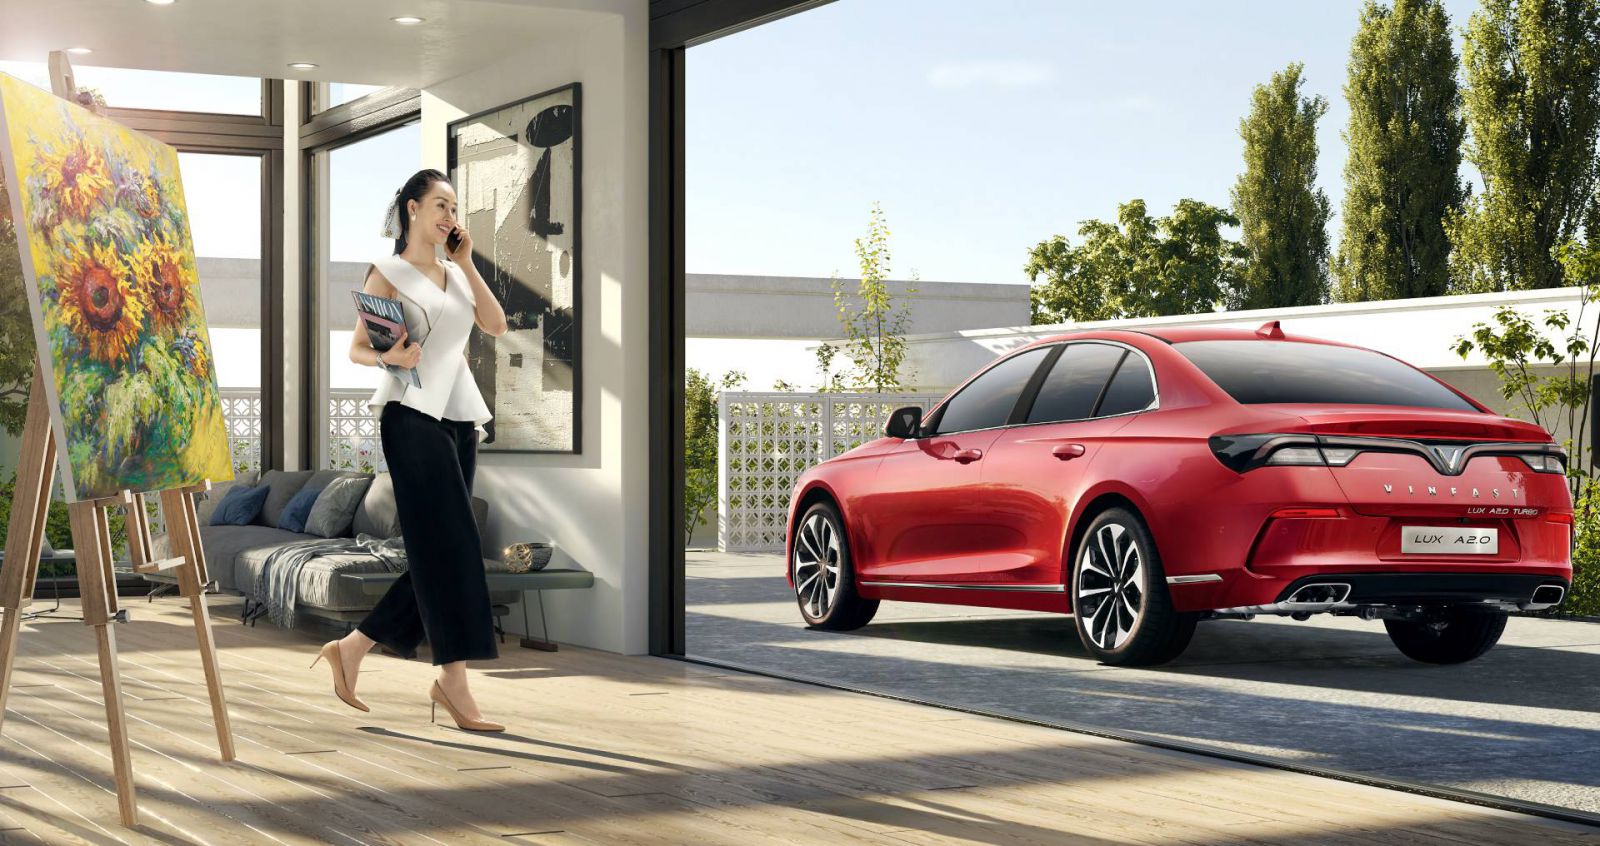 khách hàng có cơ hội rinh xe sang VinFast Lux chỉ từ 801 triệu đồng với mẫu Lux A2.0